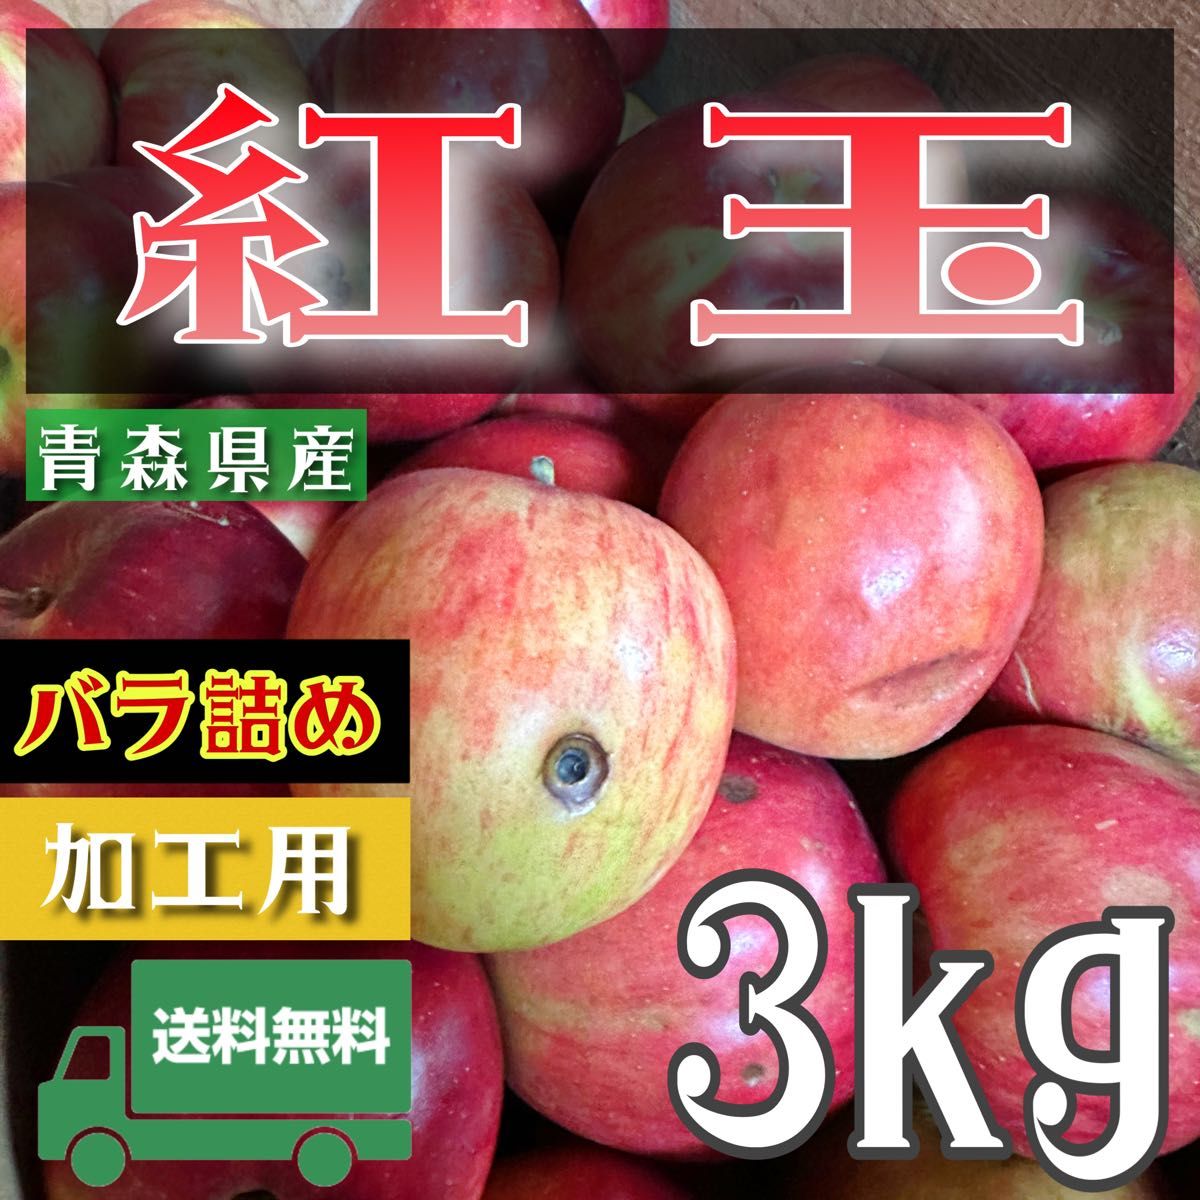 ＂ 紅玉 ＂【青森県産りんご3kg】【産地直送】【即購入OK】【送料無料】加工用 りんご リンゴ  林檎